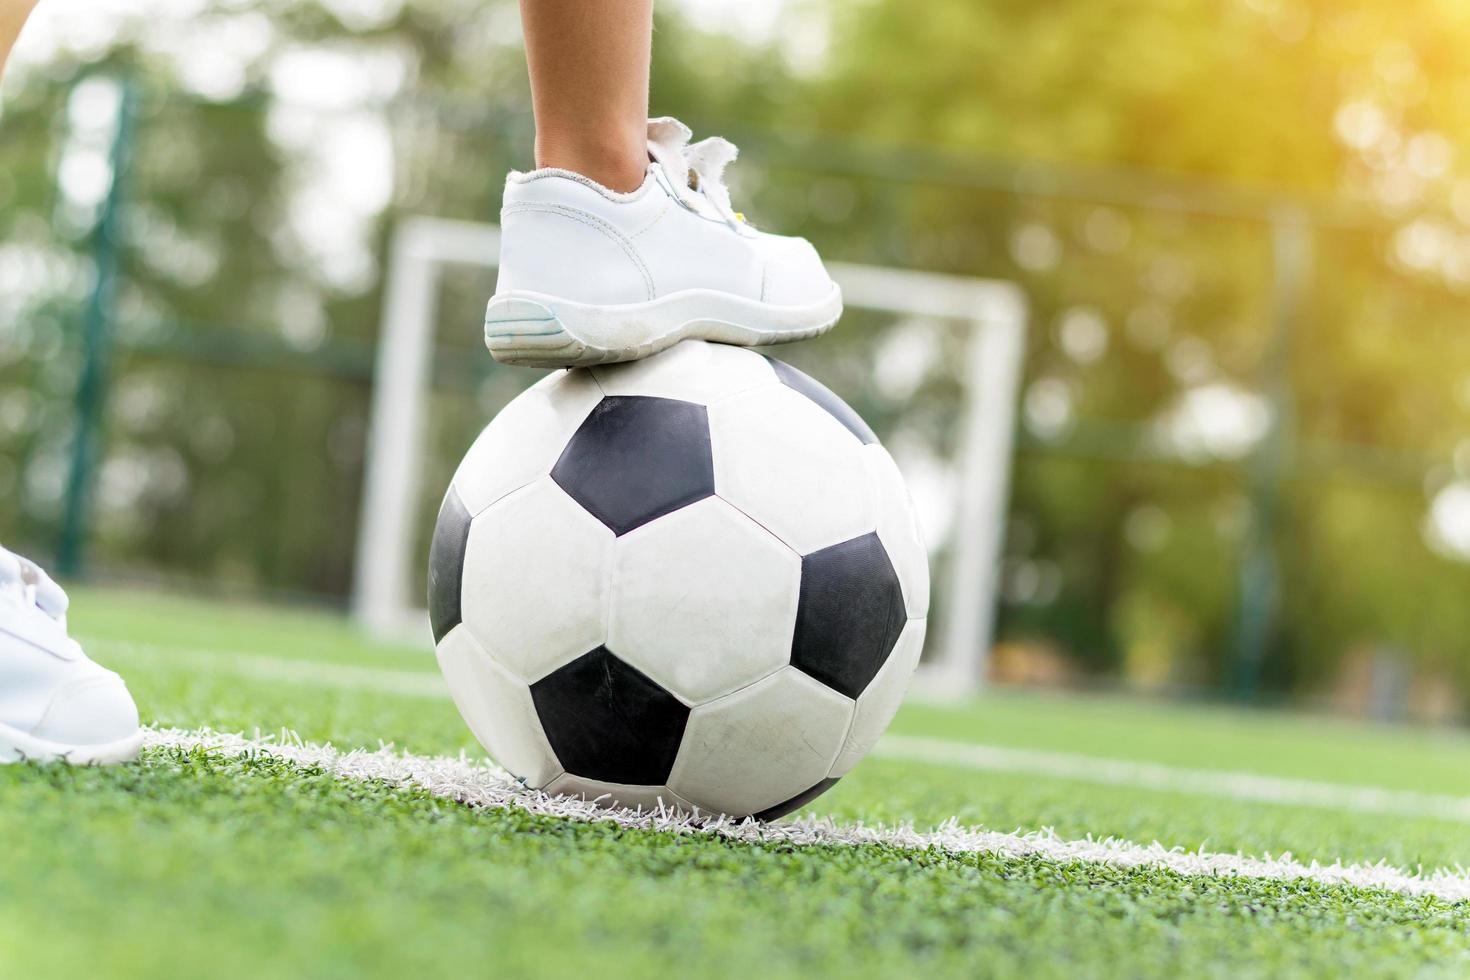 Pies de un niño vestido con zapatillas blancas pisando una pelota de fútbol foto